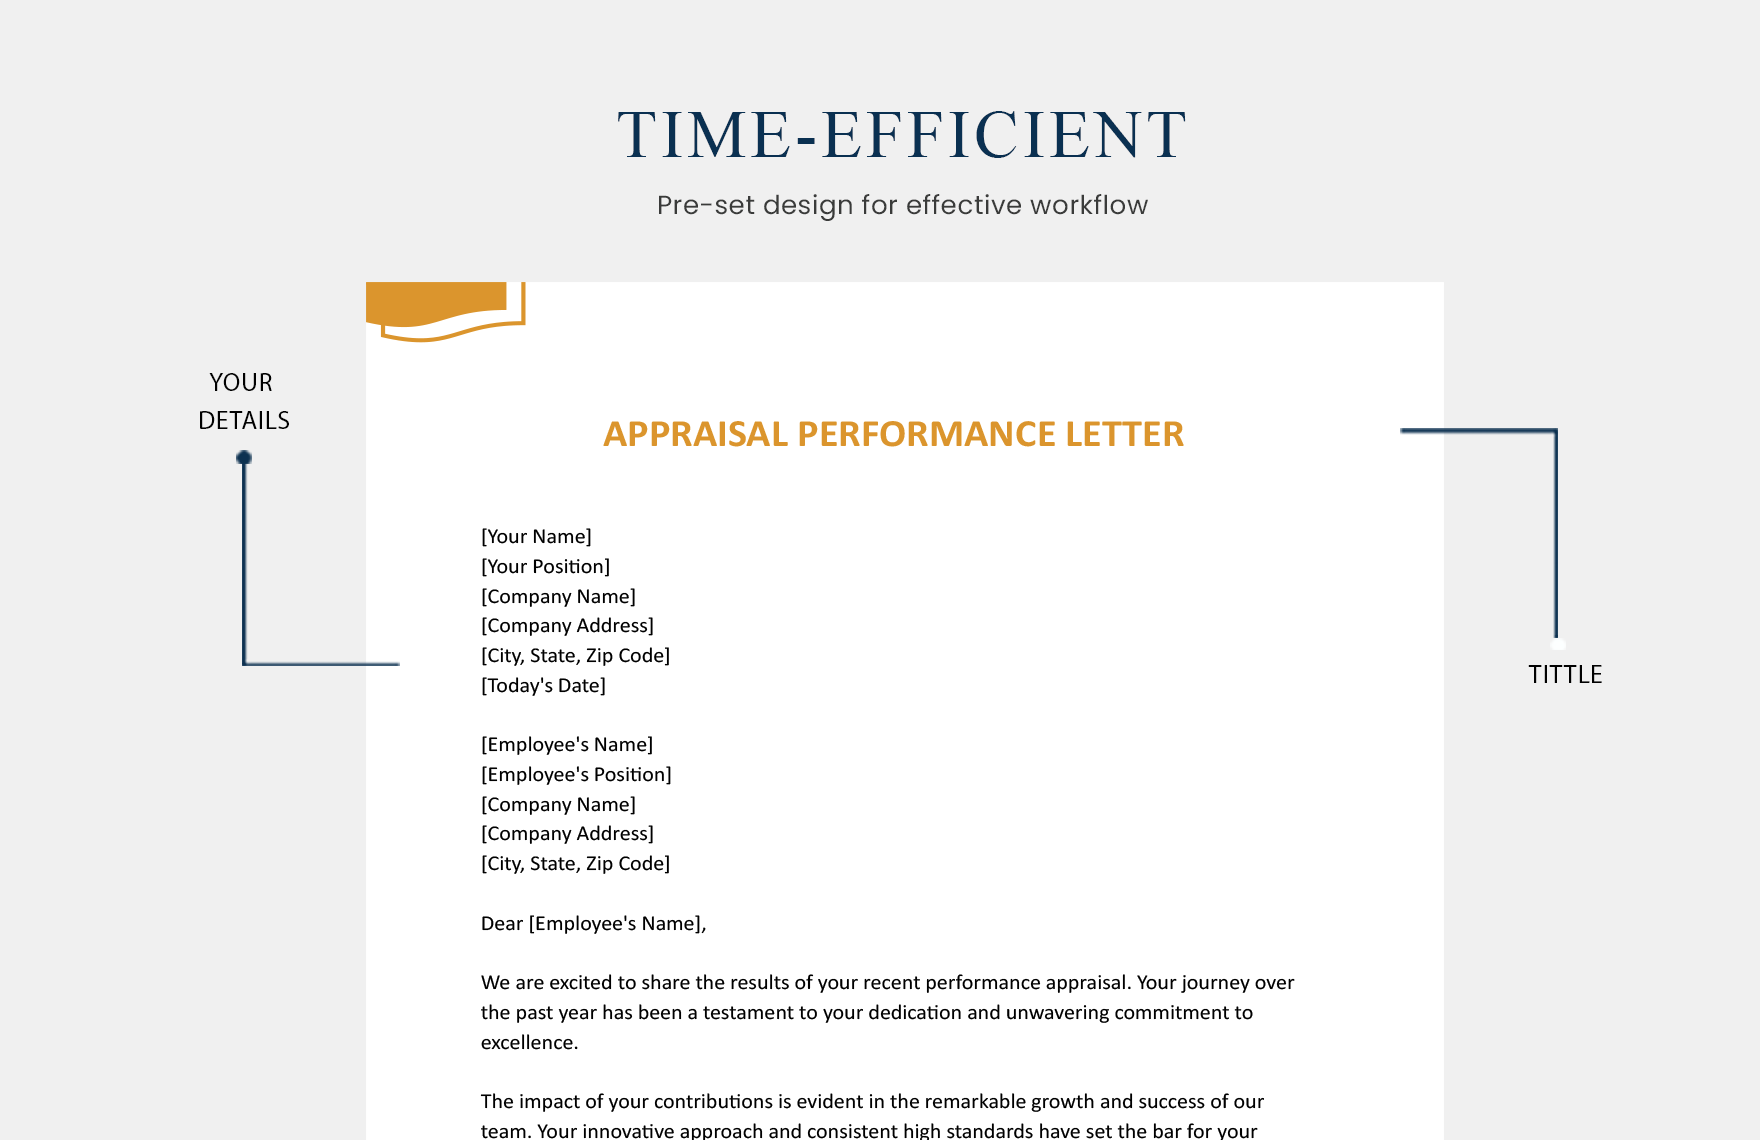 Appraisal Performance Letter